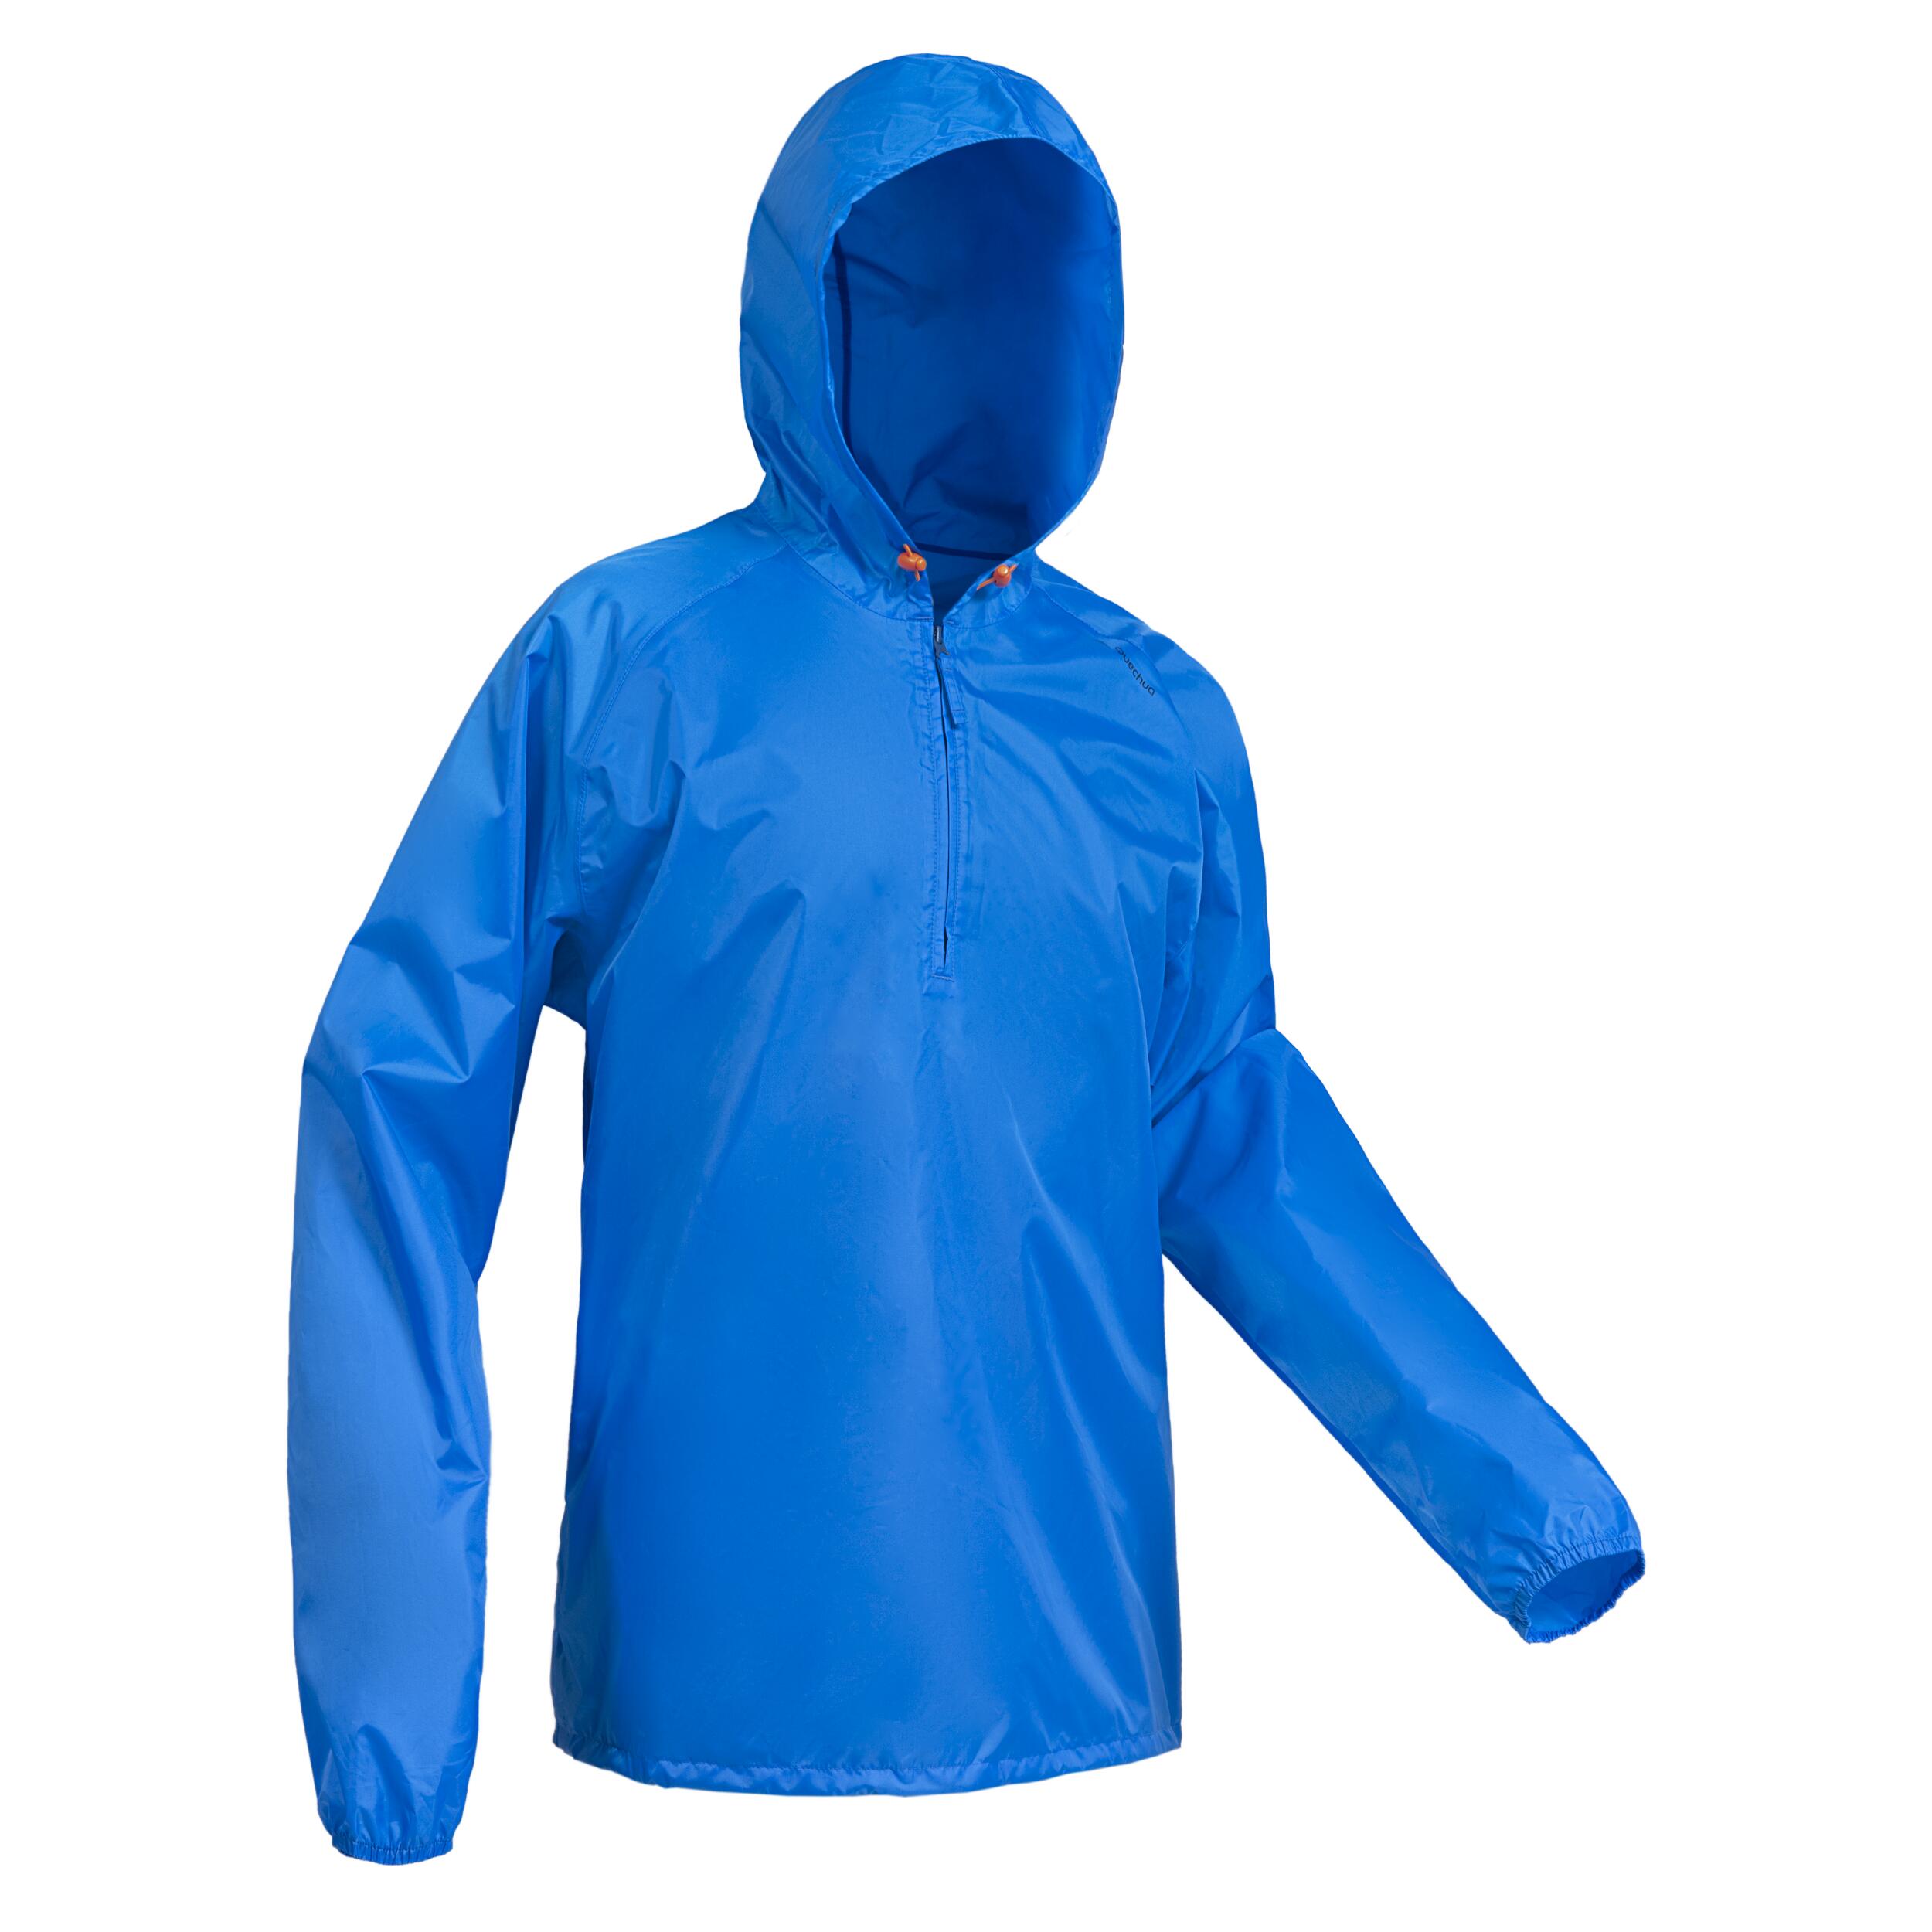 Men's Windproof and Water-repellent Hiking Jacket - Raincut 1/2 Zip 9/15